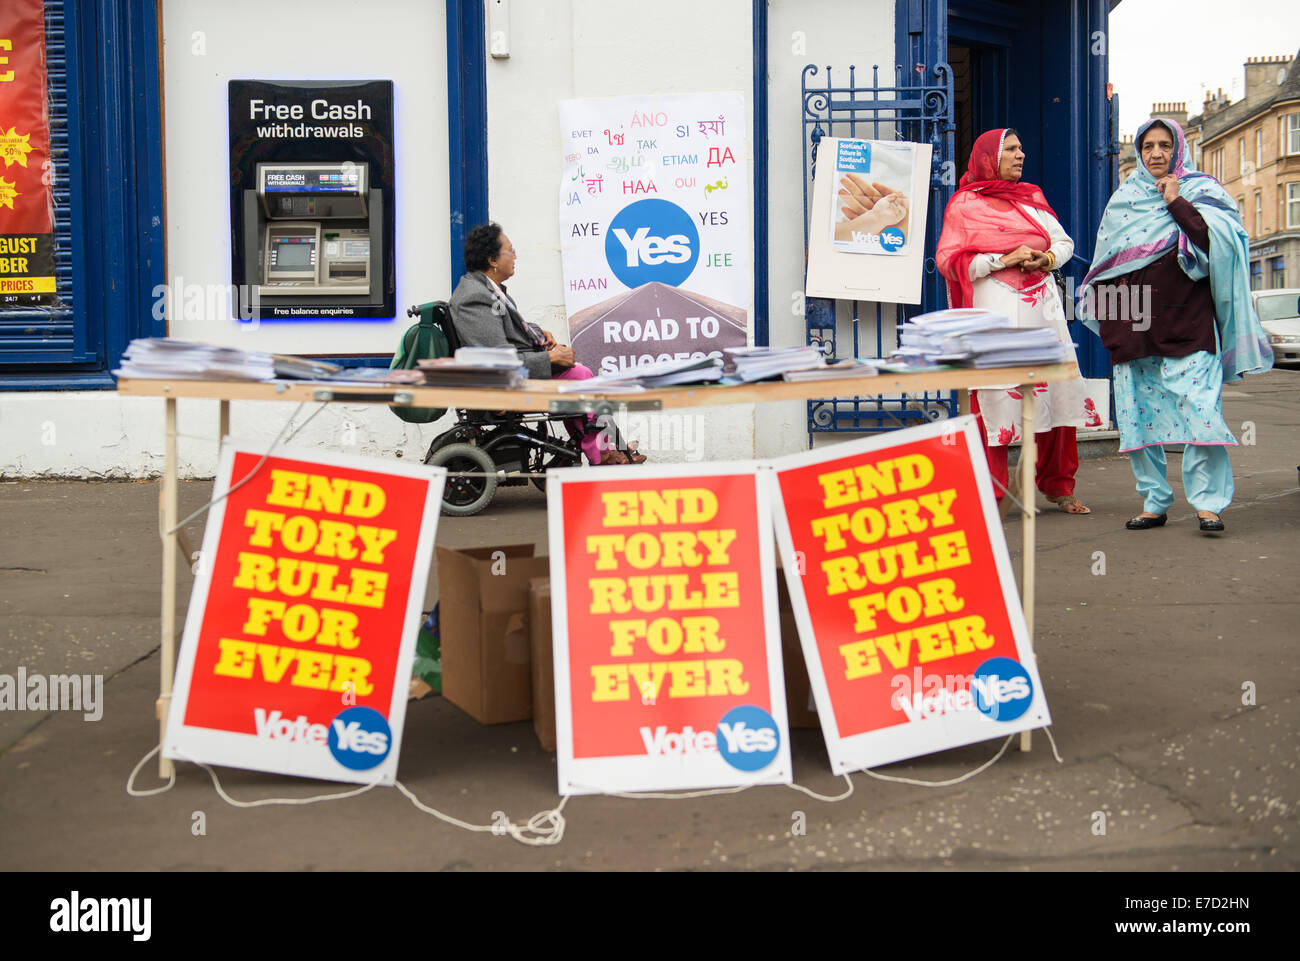 Glasgow, Ecosse. 14 Septembre, 2014. Pro-Scottish "Oui à l'indépendance de l'Écosse' campagne affiches, bannières et drapeaux ornent sautoir bâtiments dans la région de Pollokshields de la ville, le 14 septembre 2014 à Glasgow, en Écosse. L'Écosse va voter sur l'opportunité de quitter le Royaume-Uni dans le cadre d'un référendum tenu le 18 septembre cette année Crédit : Sam Kovak/Alamy Live News Banque D'Images